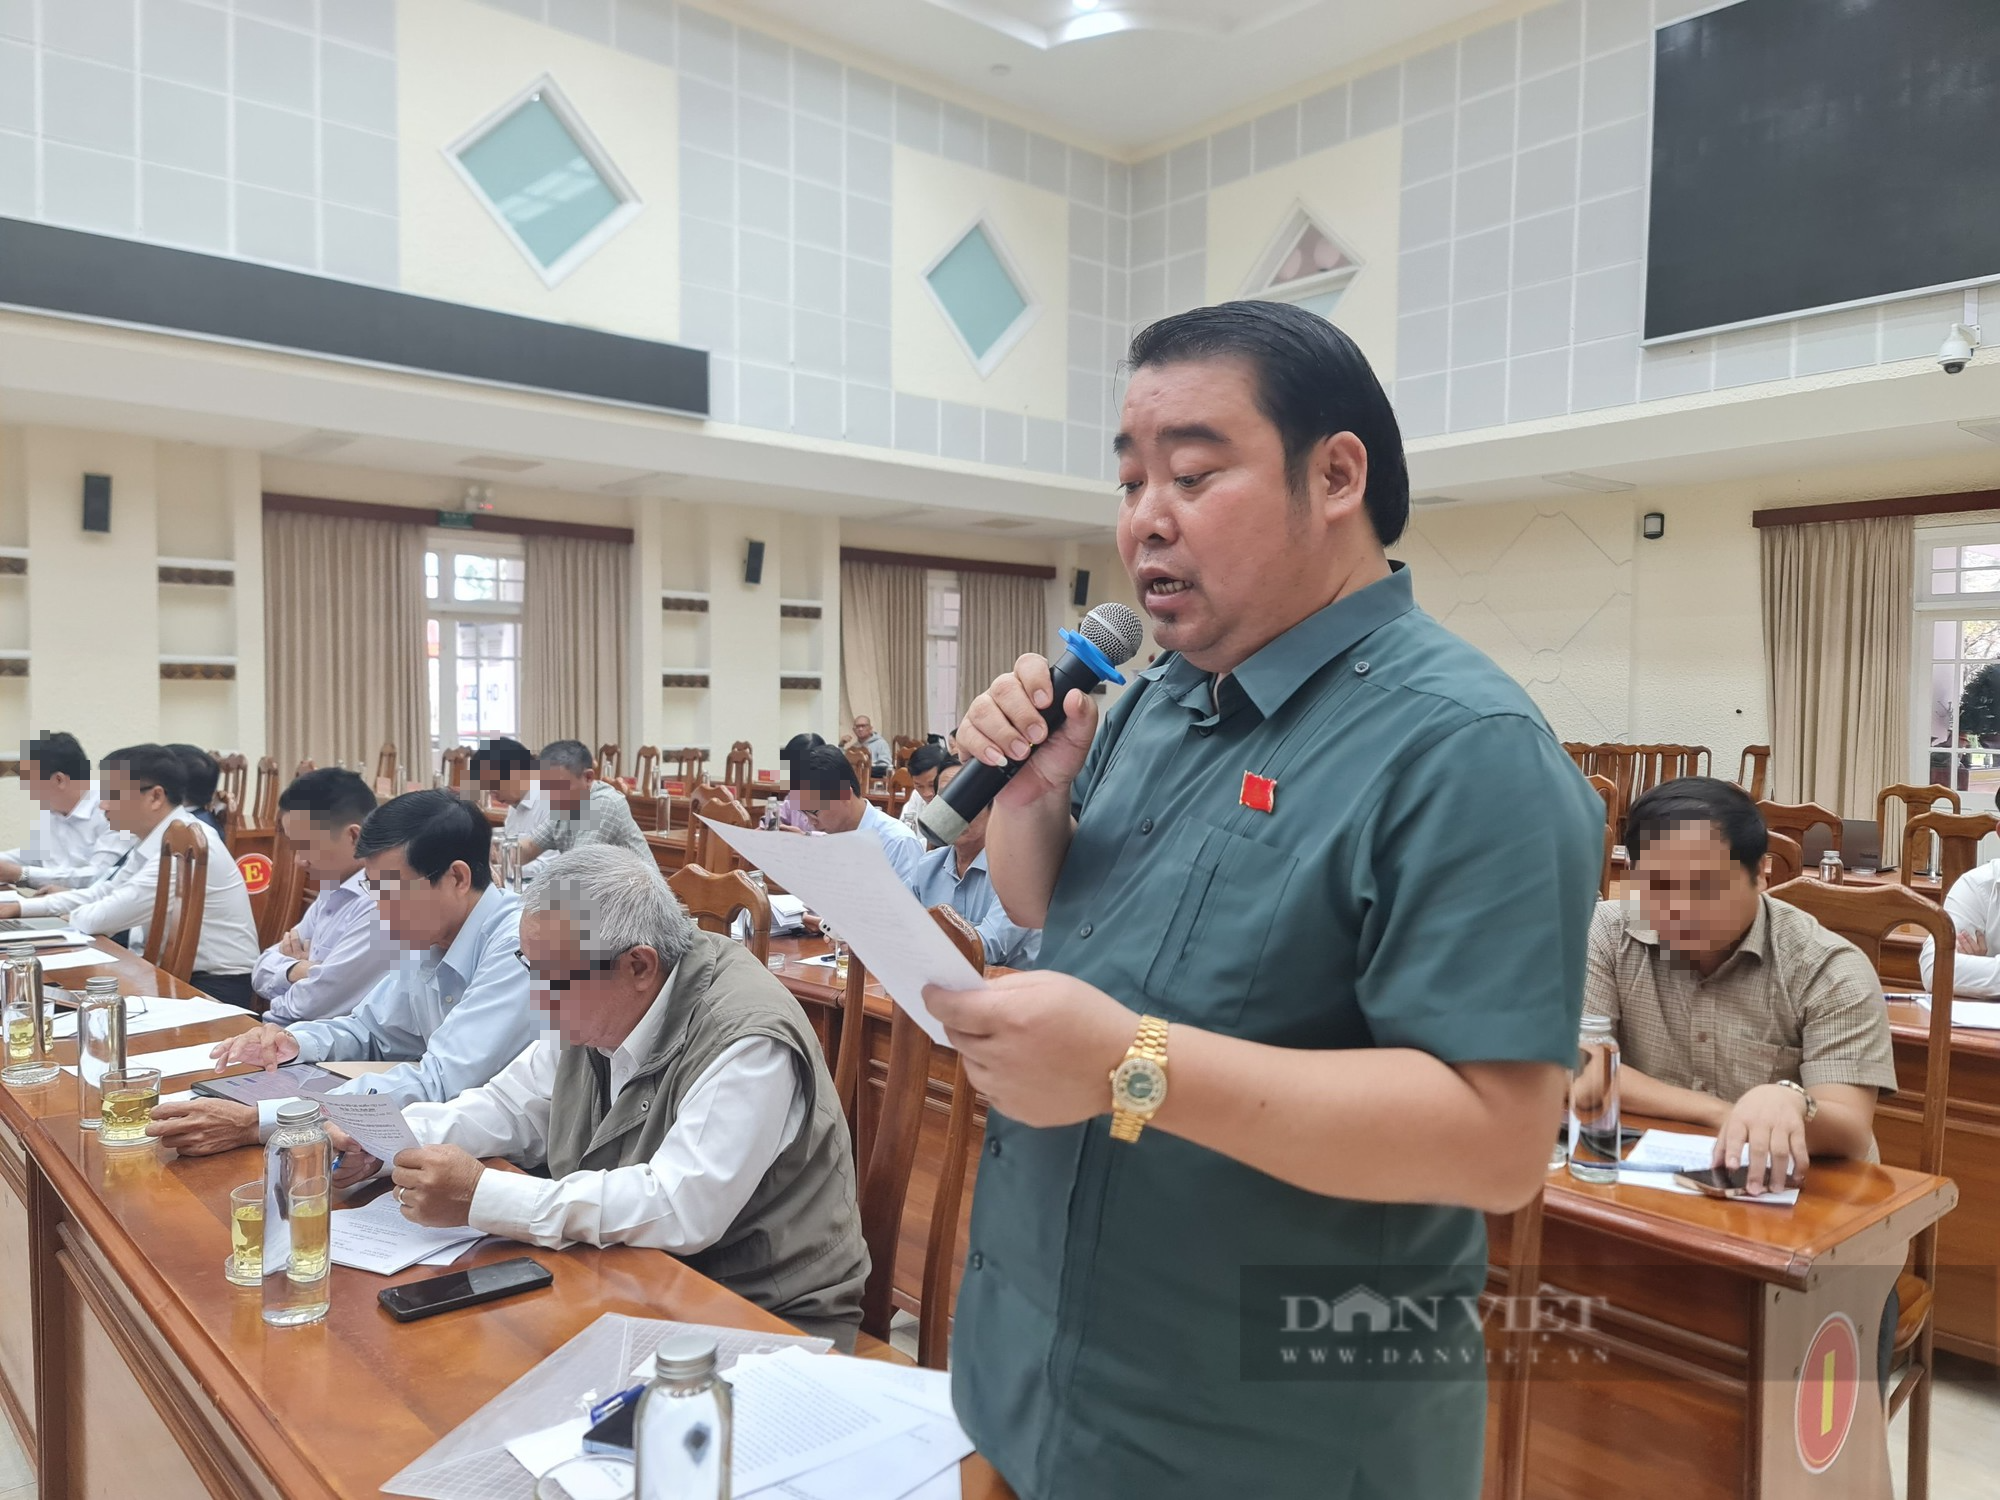 Quảng Nam: Nếu đại biểu Nguyễn Viết Dũng vi phạm sẽ xử lý theo quy định - Ảnh 1.